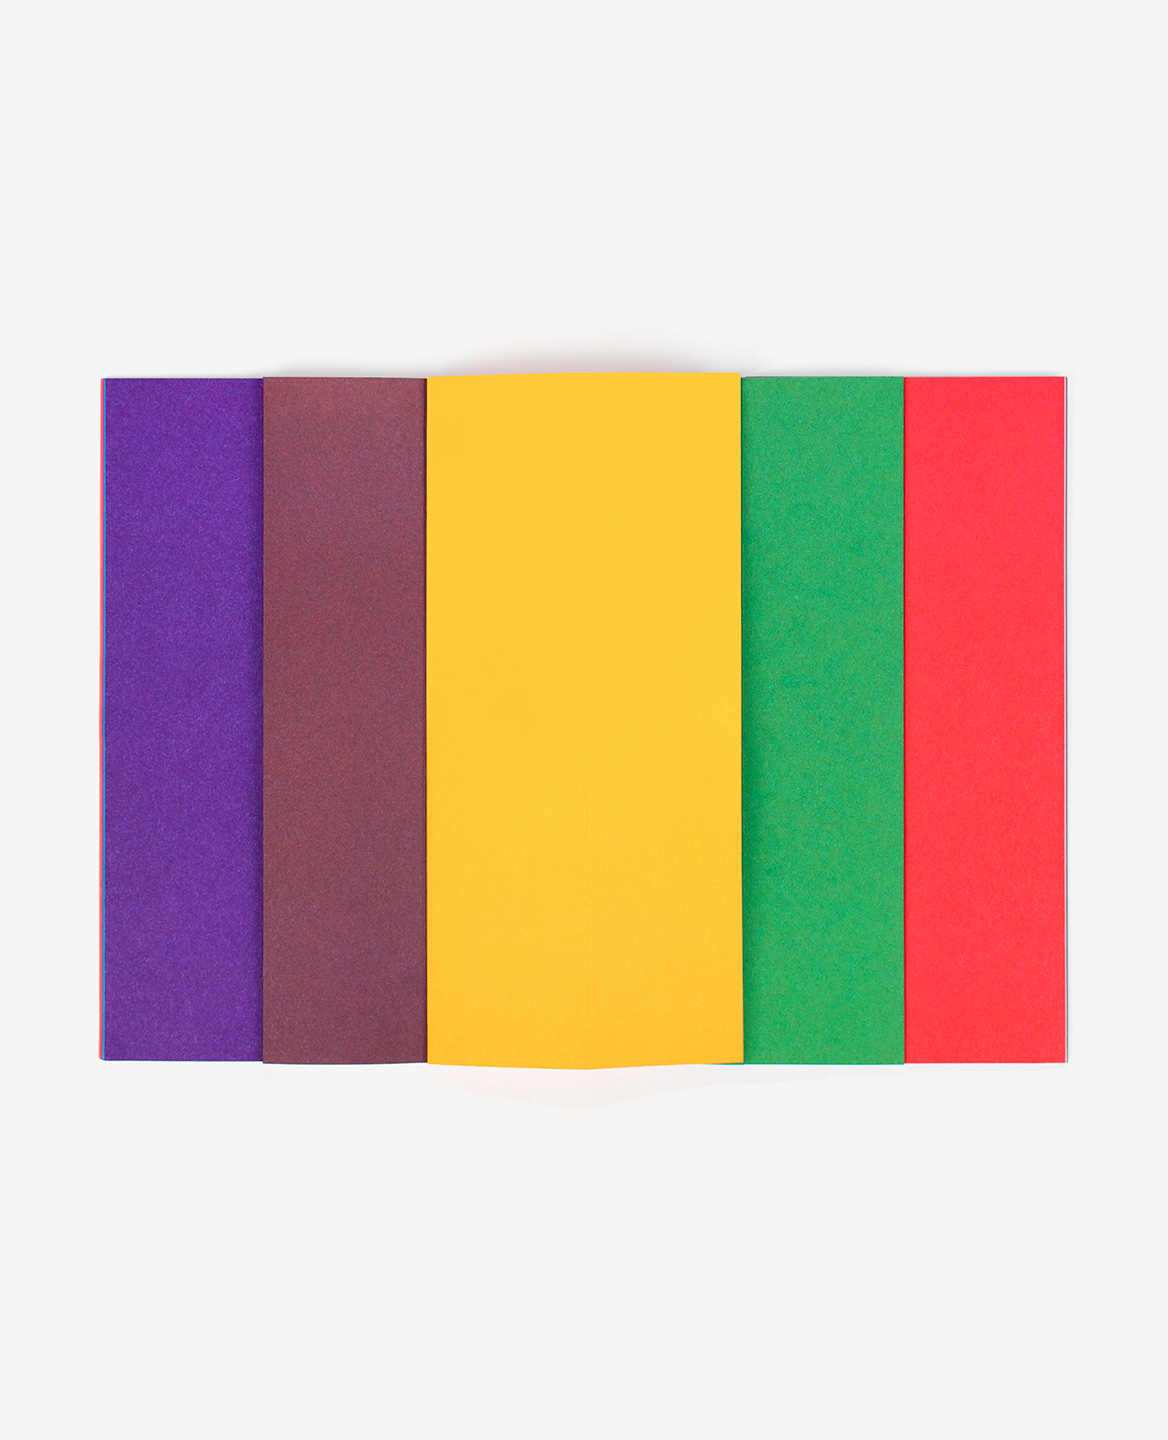 Bandes colorées violette, marron, jaune, verte et rouge du livre Strips